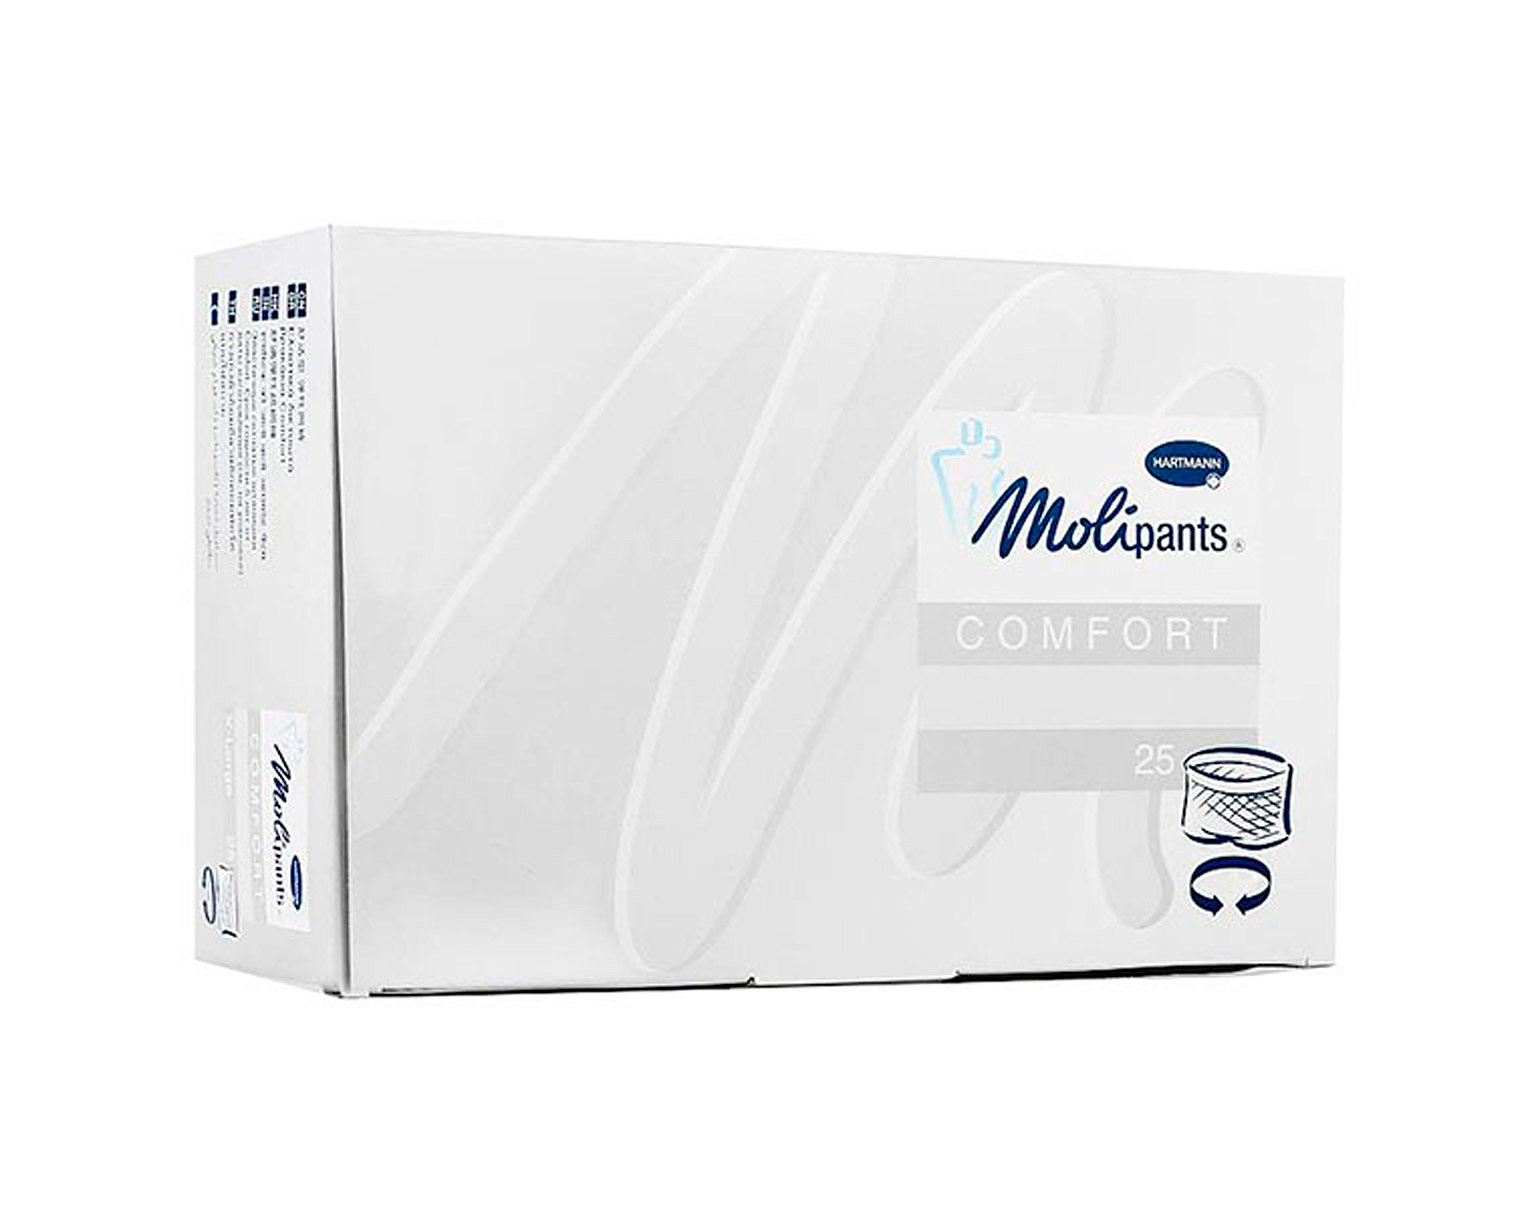 MOLIPANTS Comfort Medium - Штанишки для фиксации прокладок: размер М 25 шт.